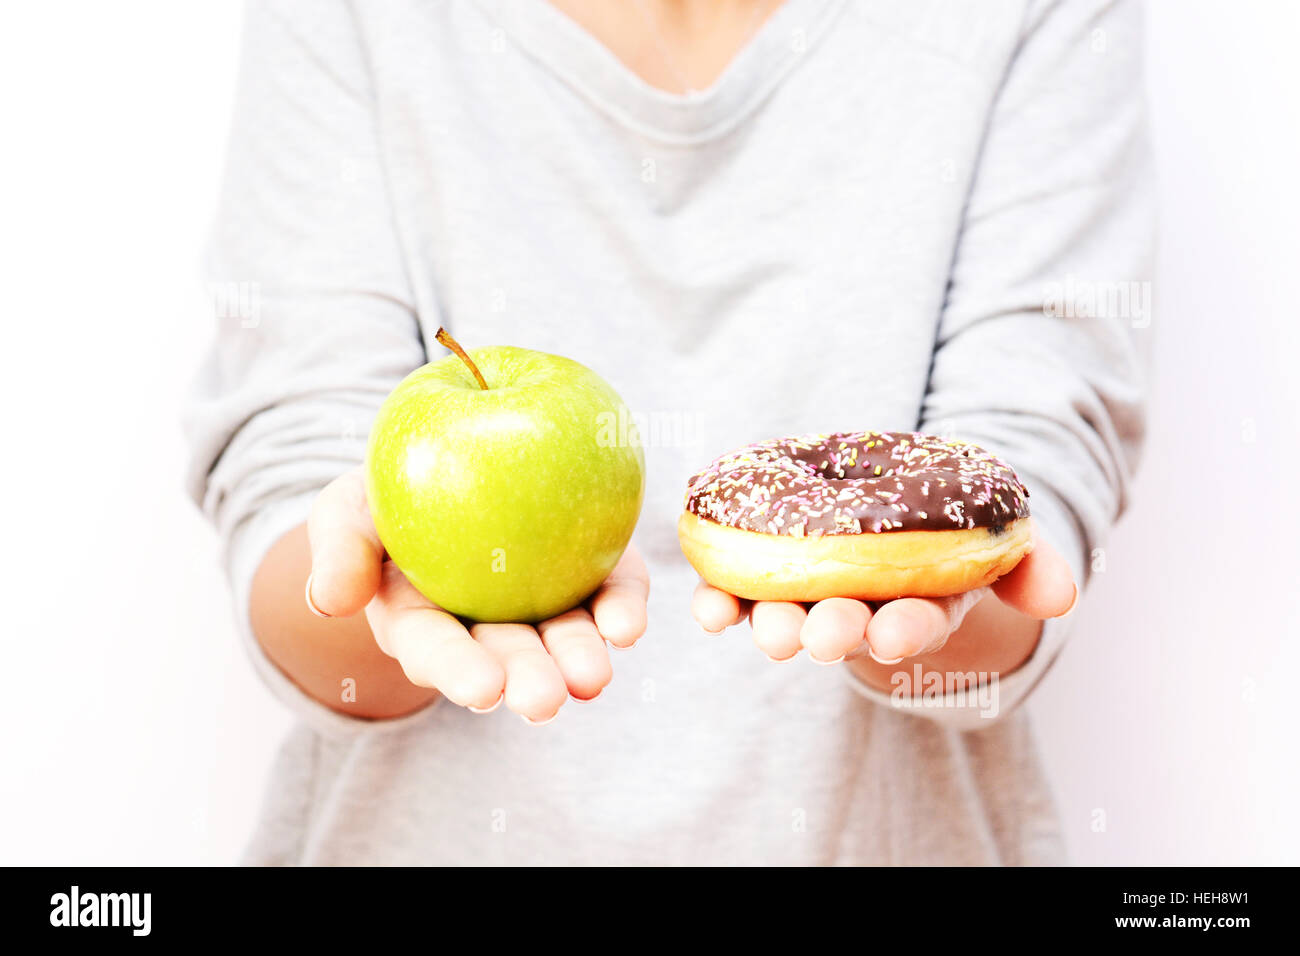 Gesunden Lebensstil oder Ernährung Konzept mit jungen Frau, die in den Händen halten, einen grünen Apfel und einen donut Stockfoto